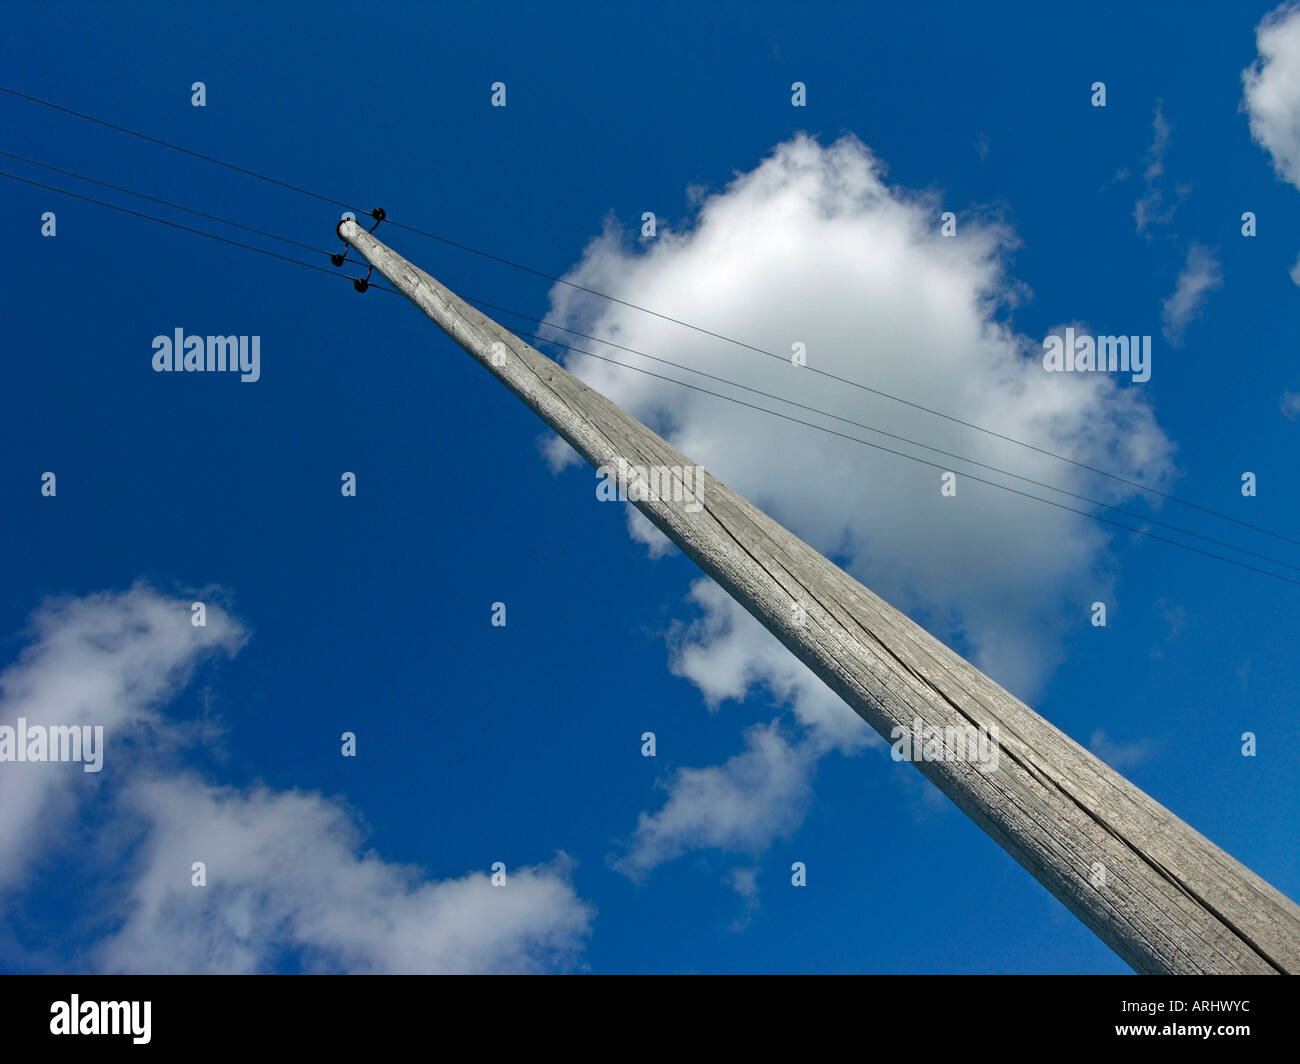 Vieux téléphone mât avec câbles archaïque contre le ciel bleu avec des nuages Banque D'Images